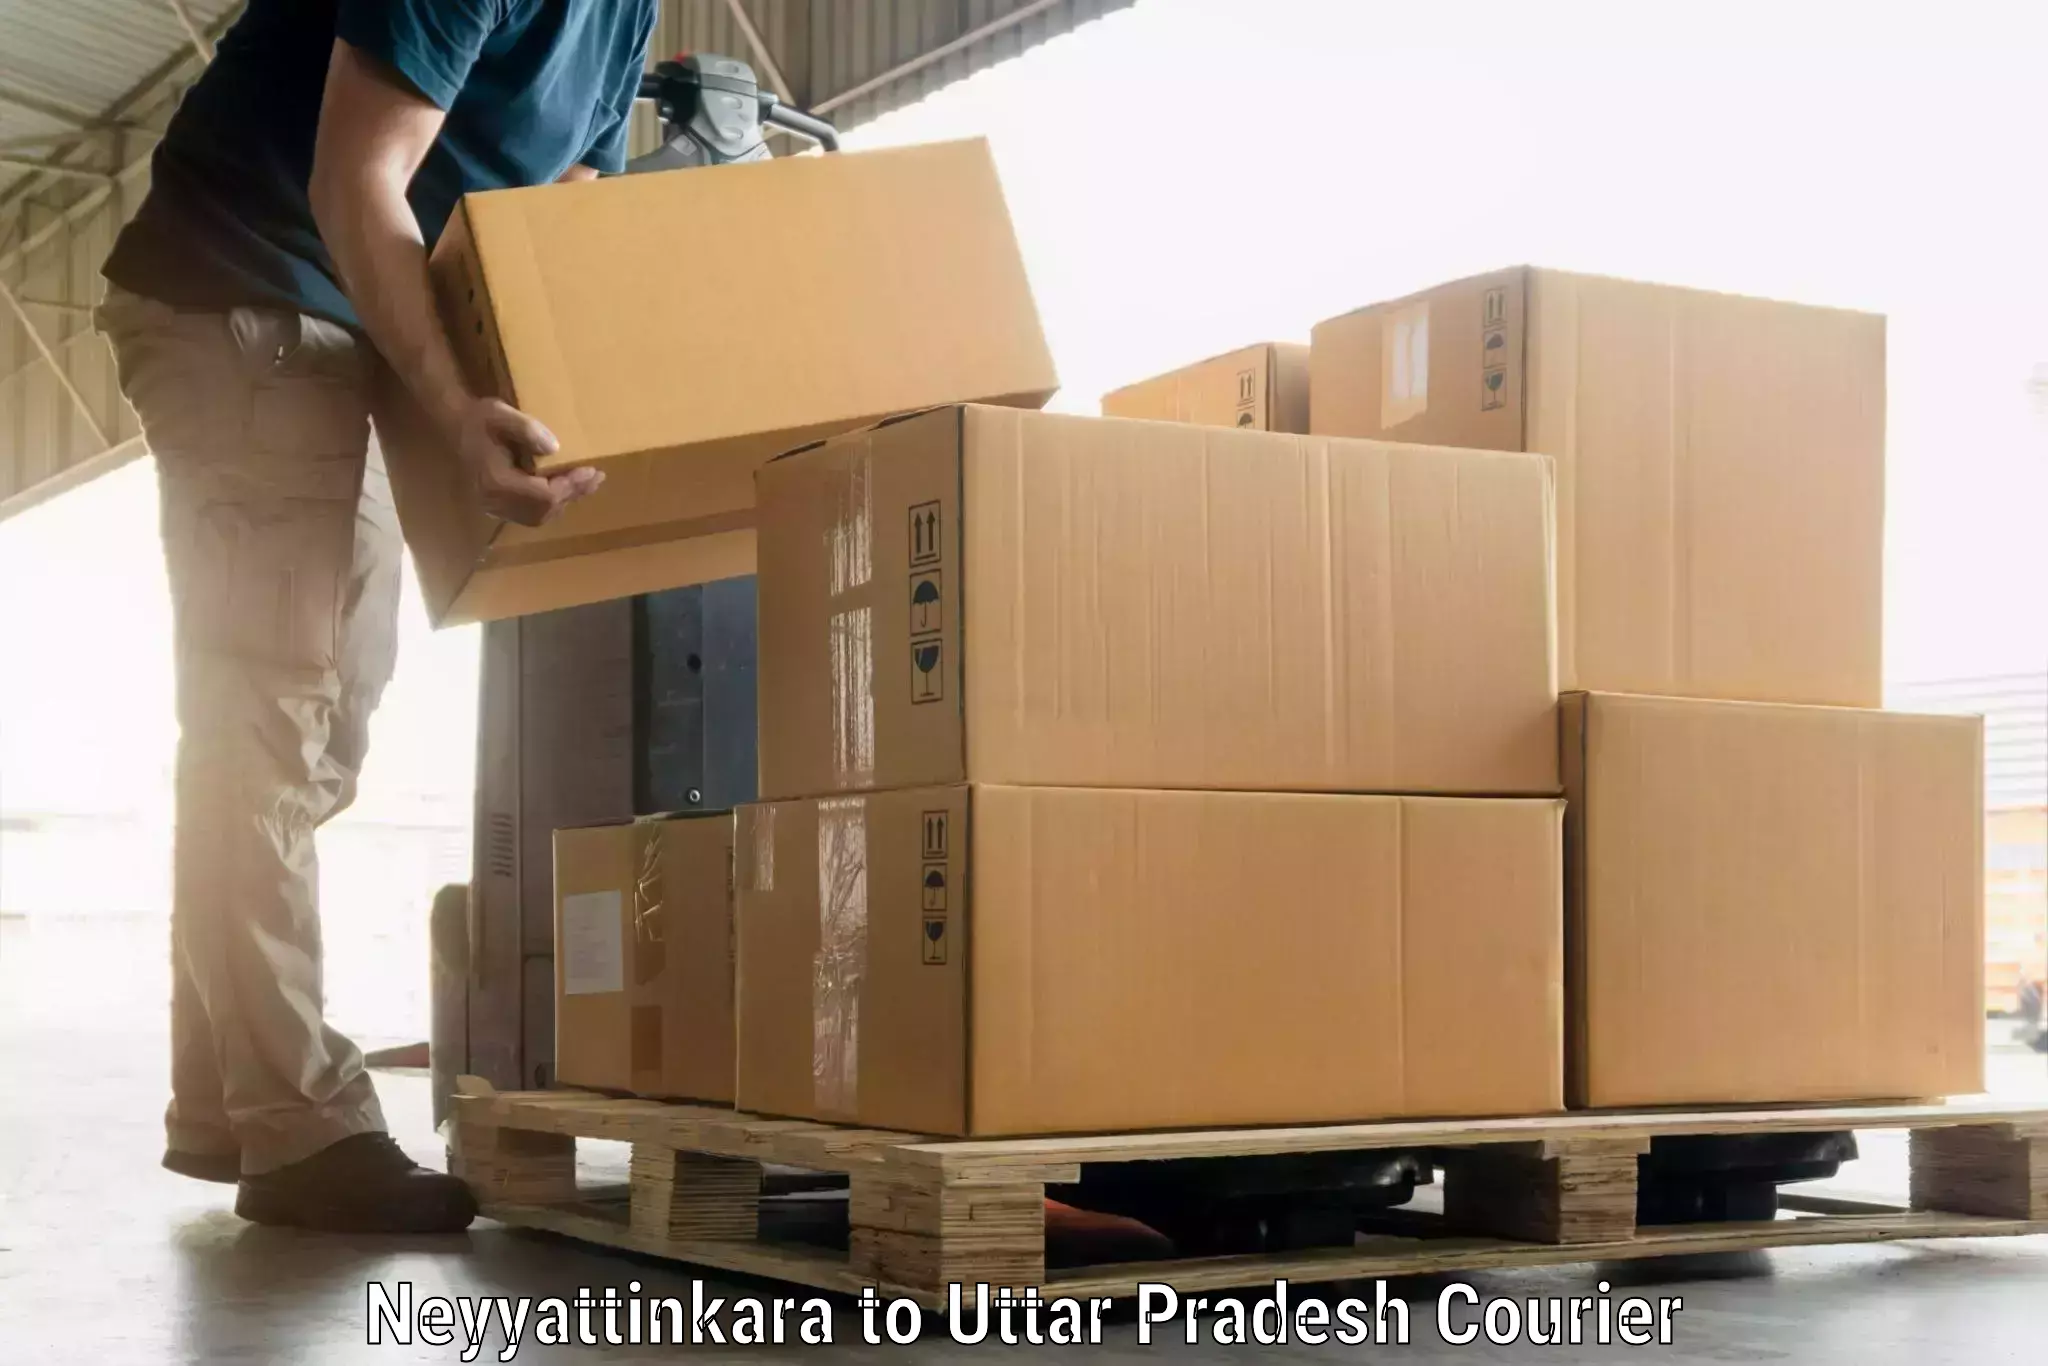 Luggage delivery system Neyyattinkara to Aligarh